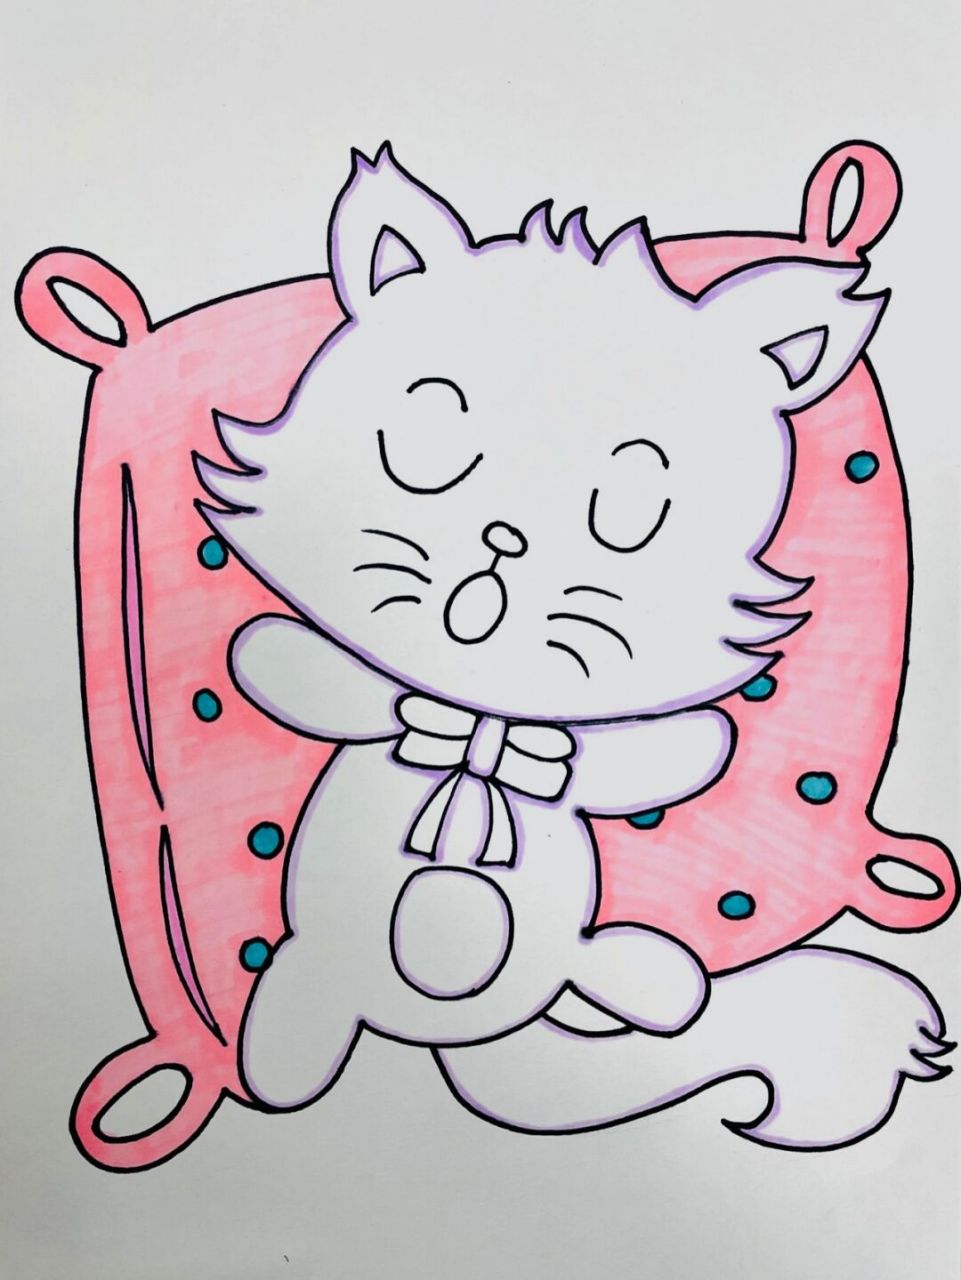 简笔画—睡觉的猫 一学就会 附加步骤图 自行配色涂色 材料:素描纸